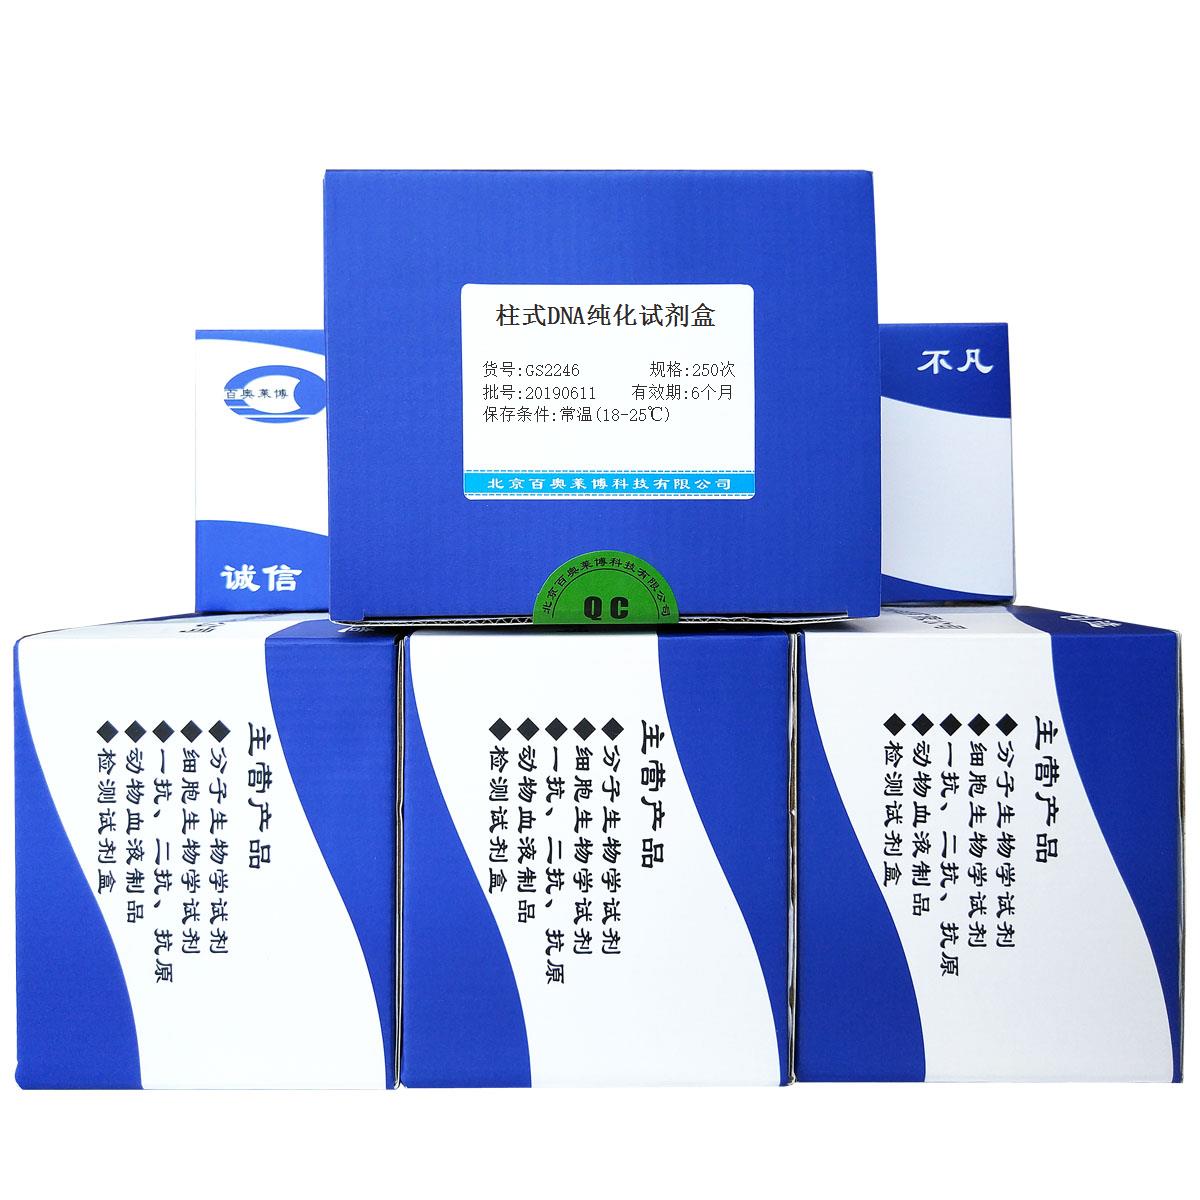 柱式DNA纯化试剂盒北京价格